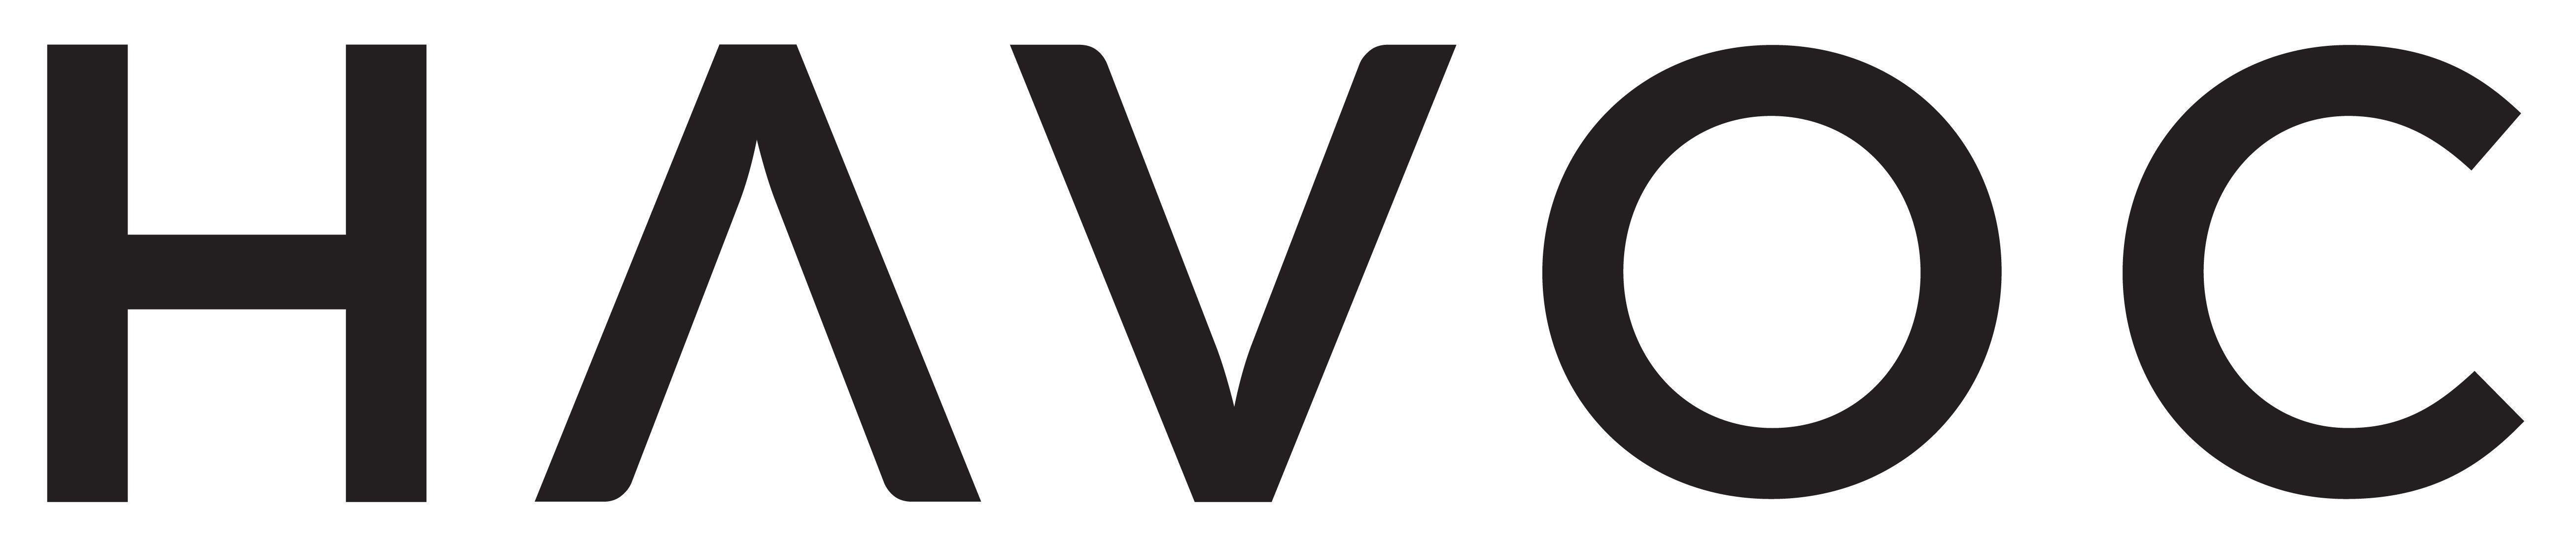 Havoc Logo - Havoc